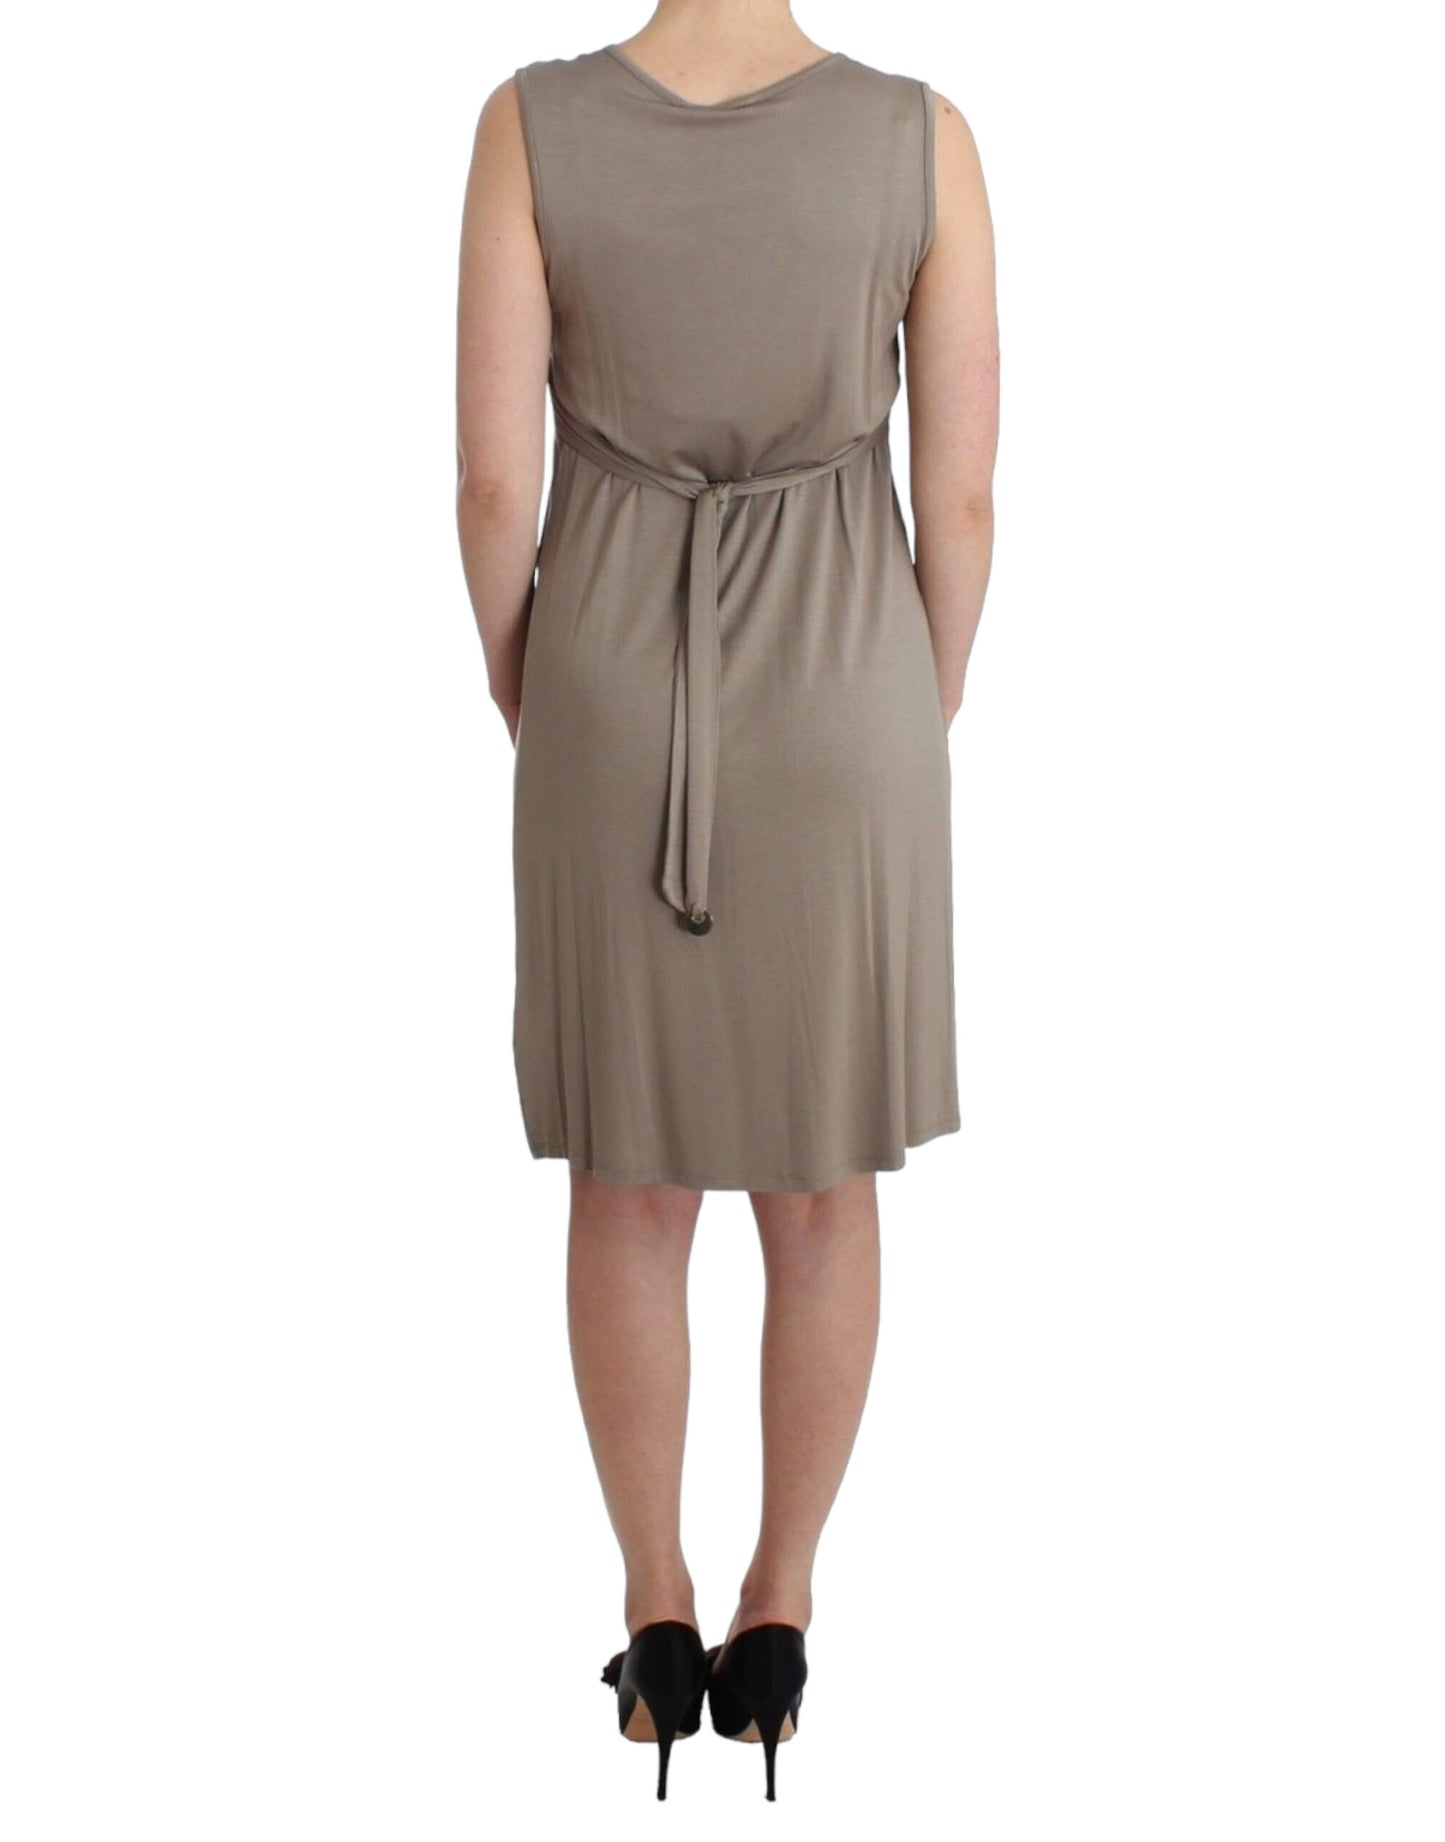 Studded Sheath Knee-Length Dress in Beige